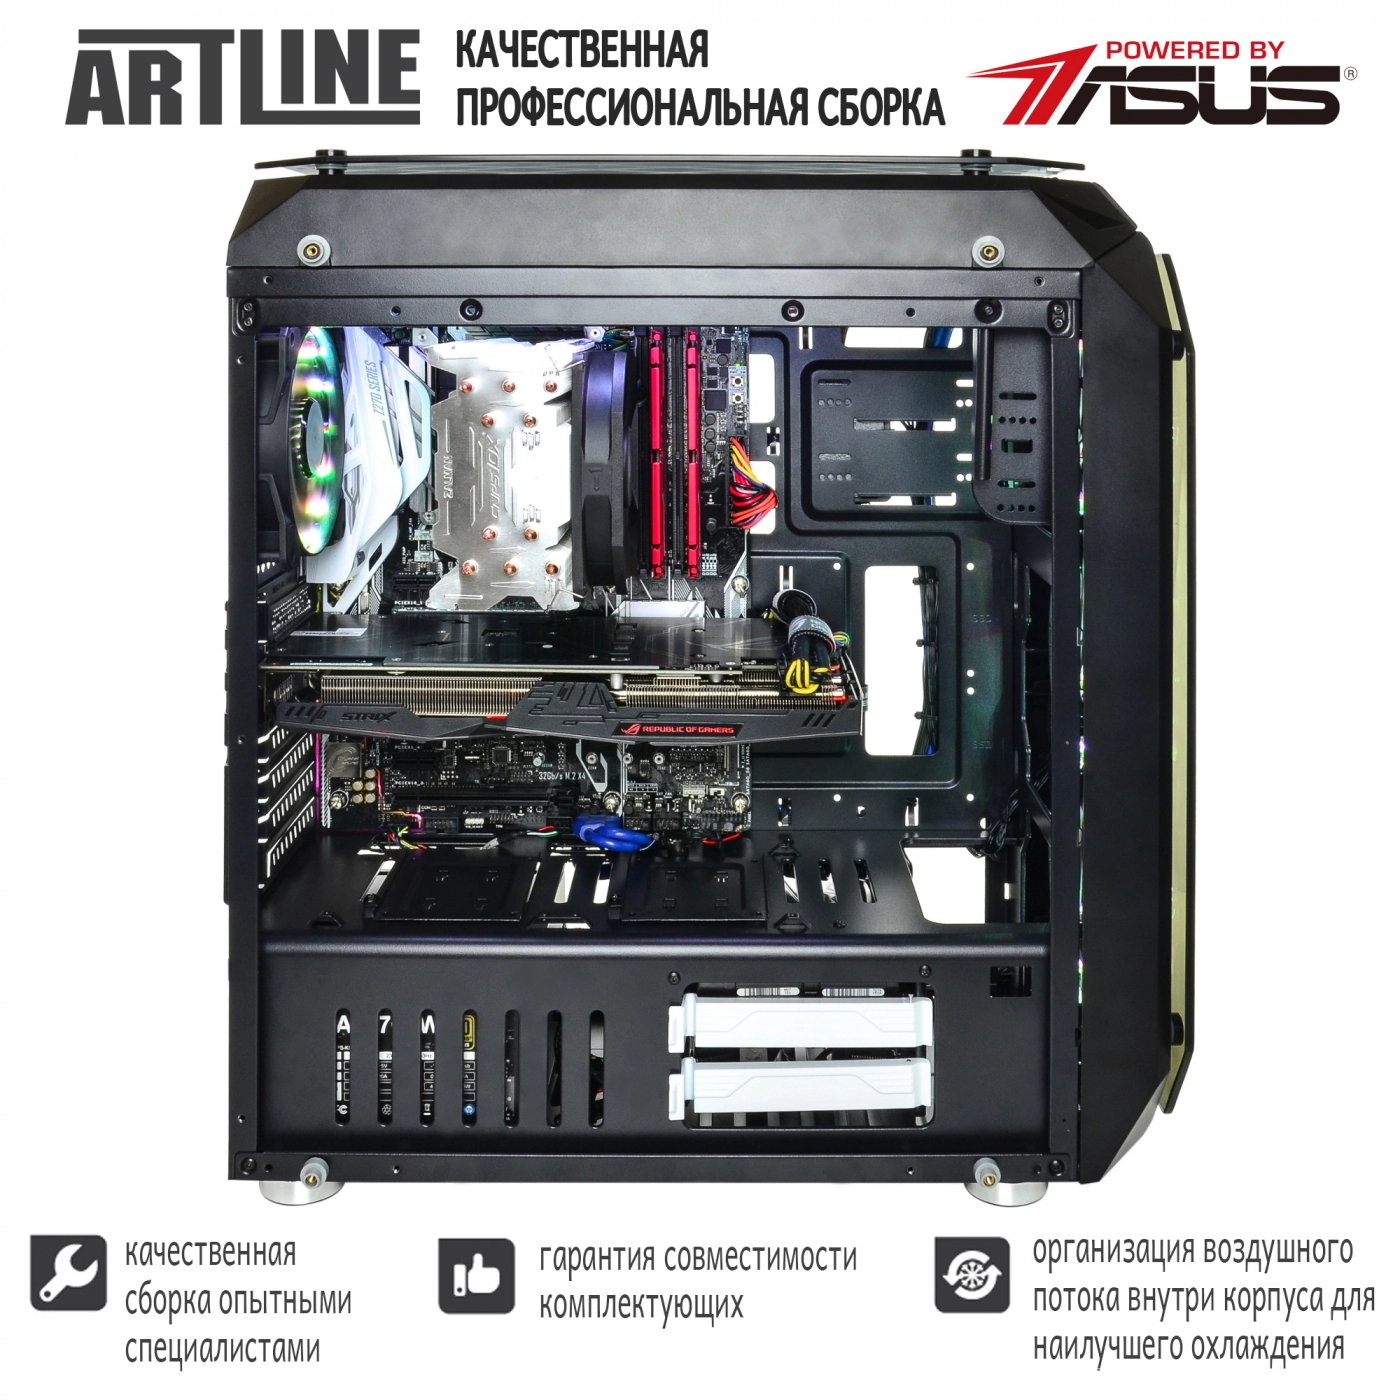 Купить Компьютер ARTLINE Gaming X95v23 - фото 5